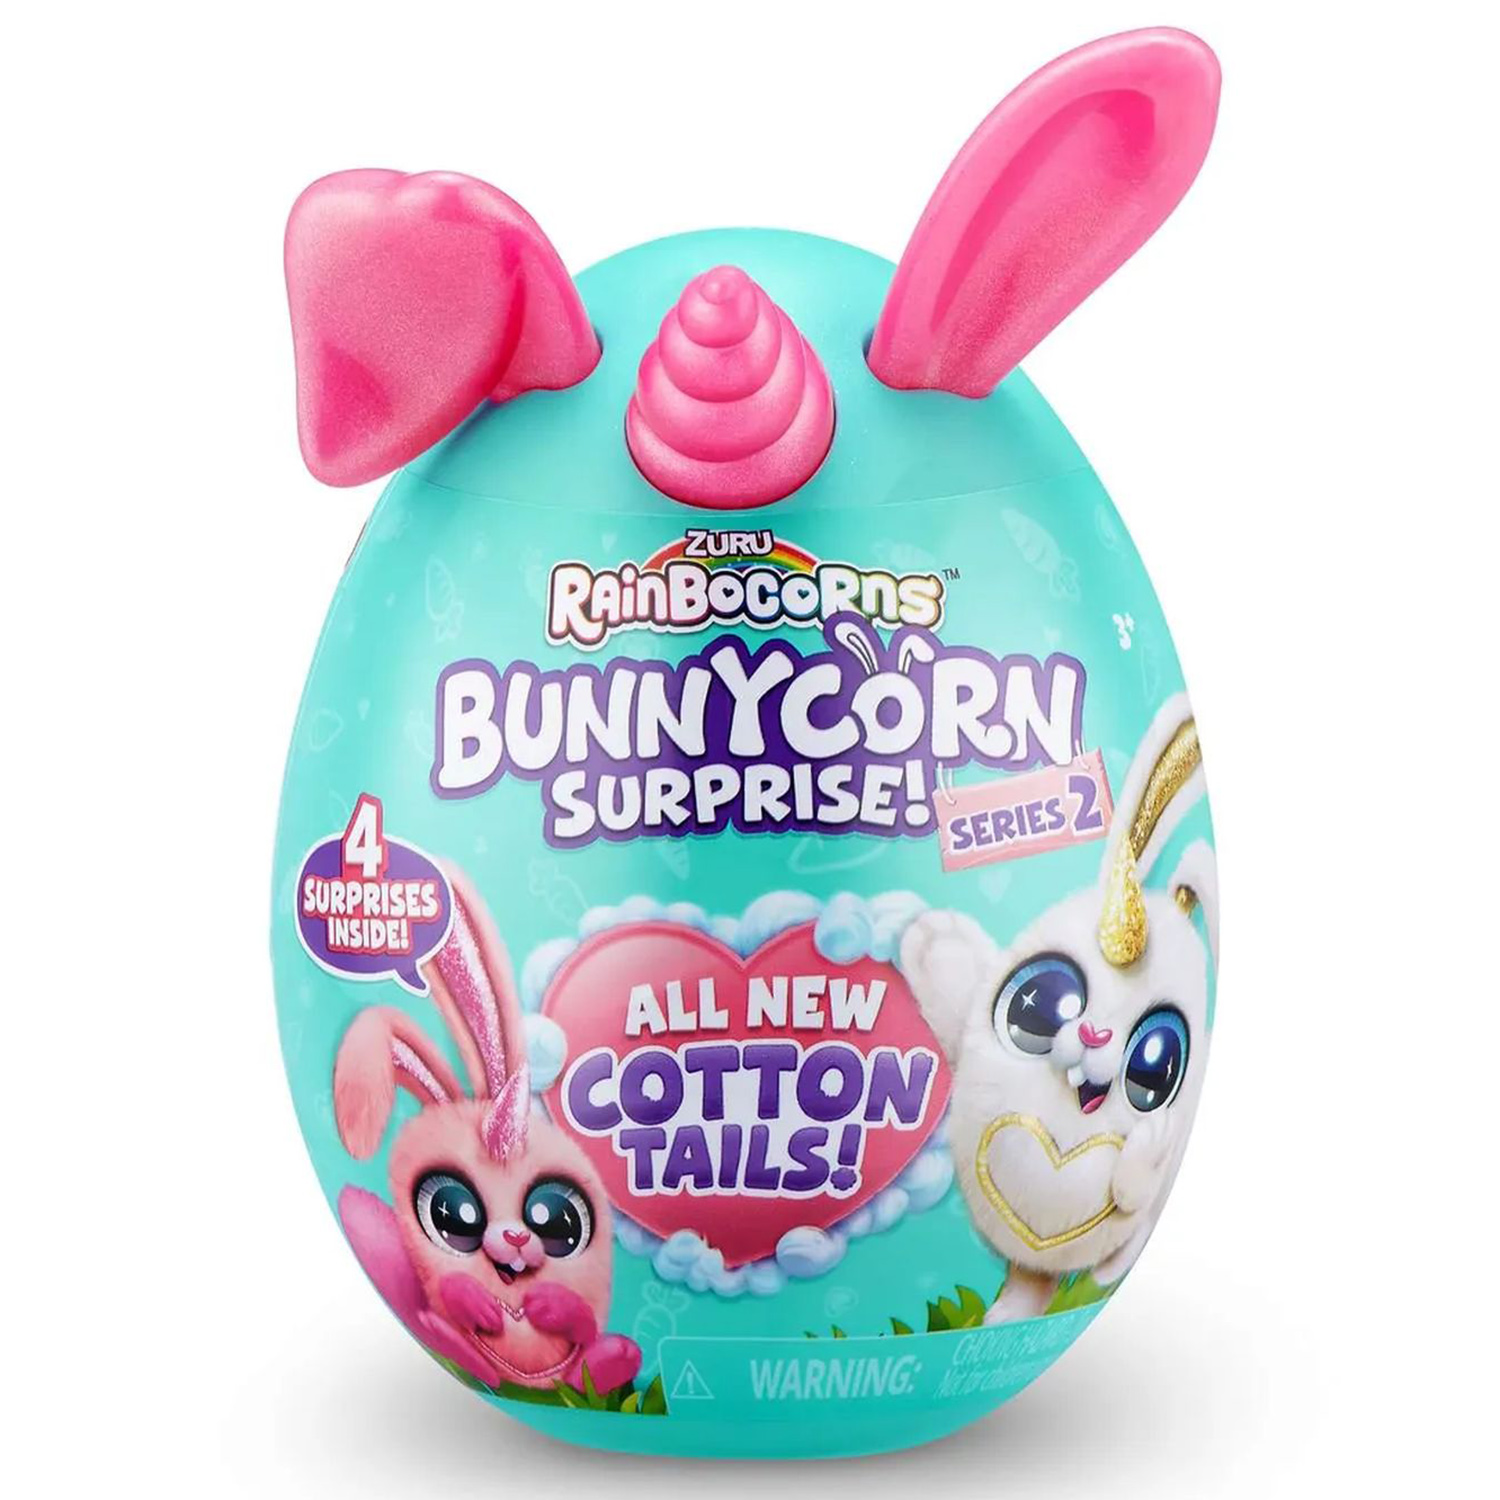 Игровой набор Zuru Rainbocorns Bunnycorn, сюрпризы в яйце серия 2, розовые ушки игровой набор zuru rainbocorns bunnycorn surprise сюрприз в яйце 9260sq1